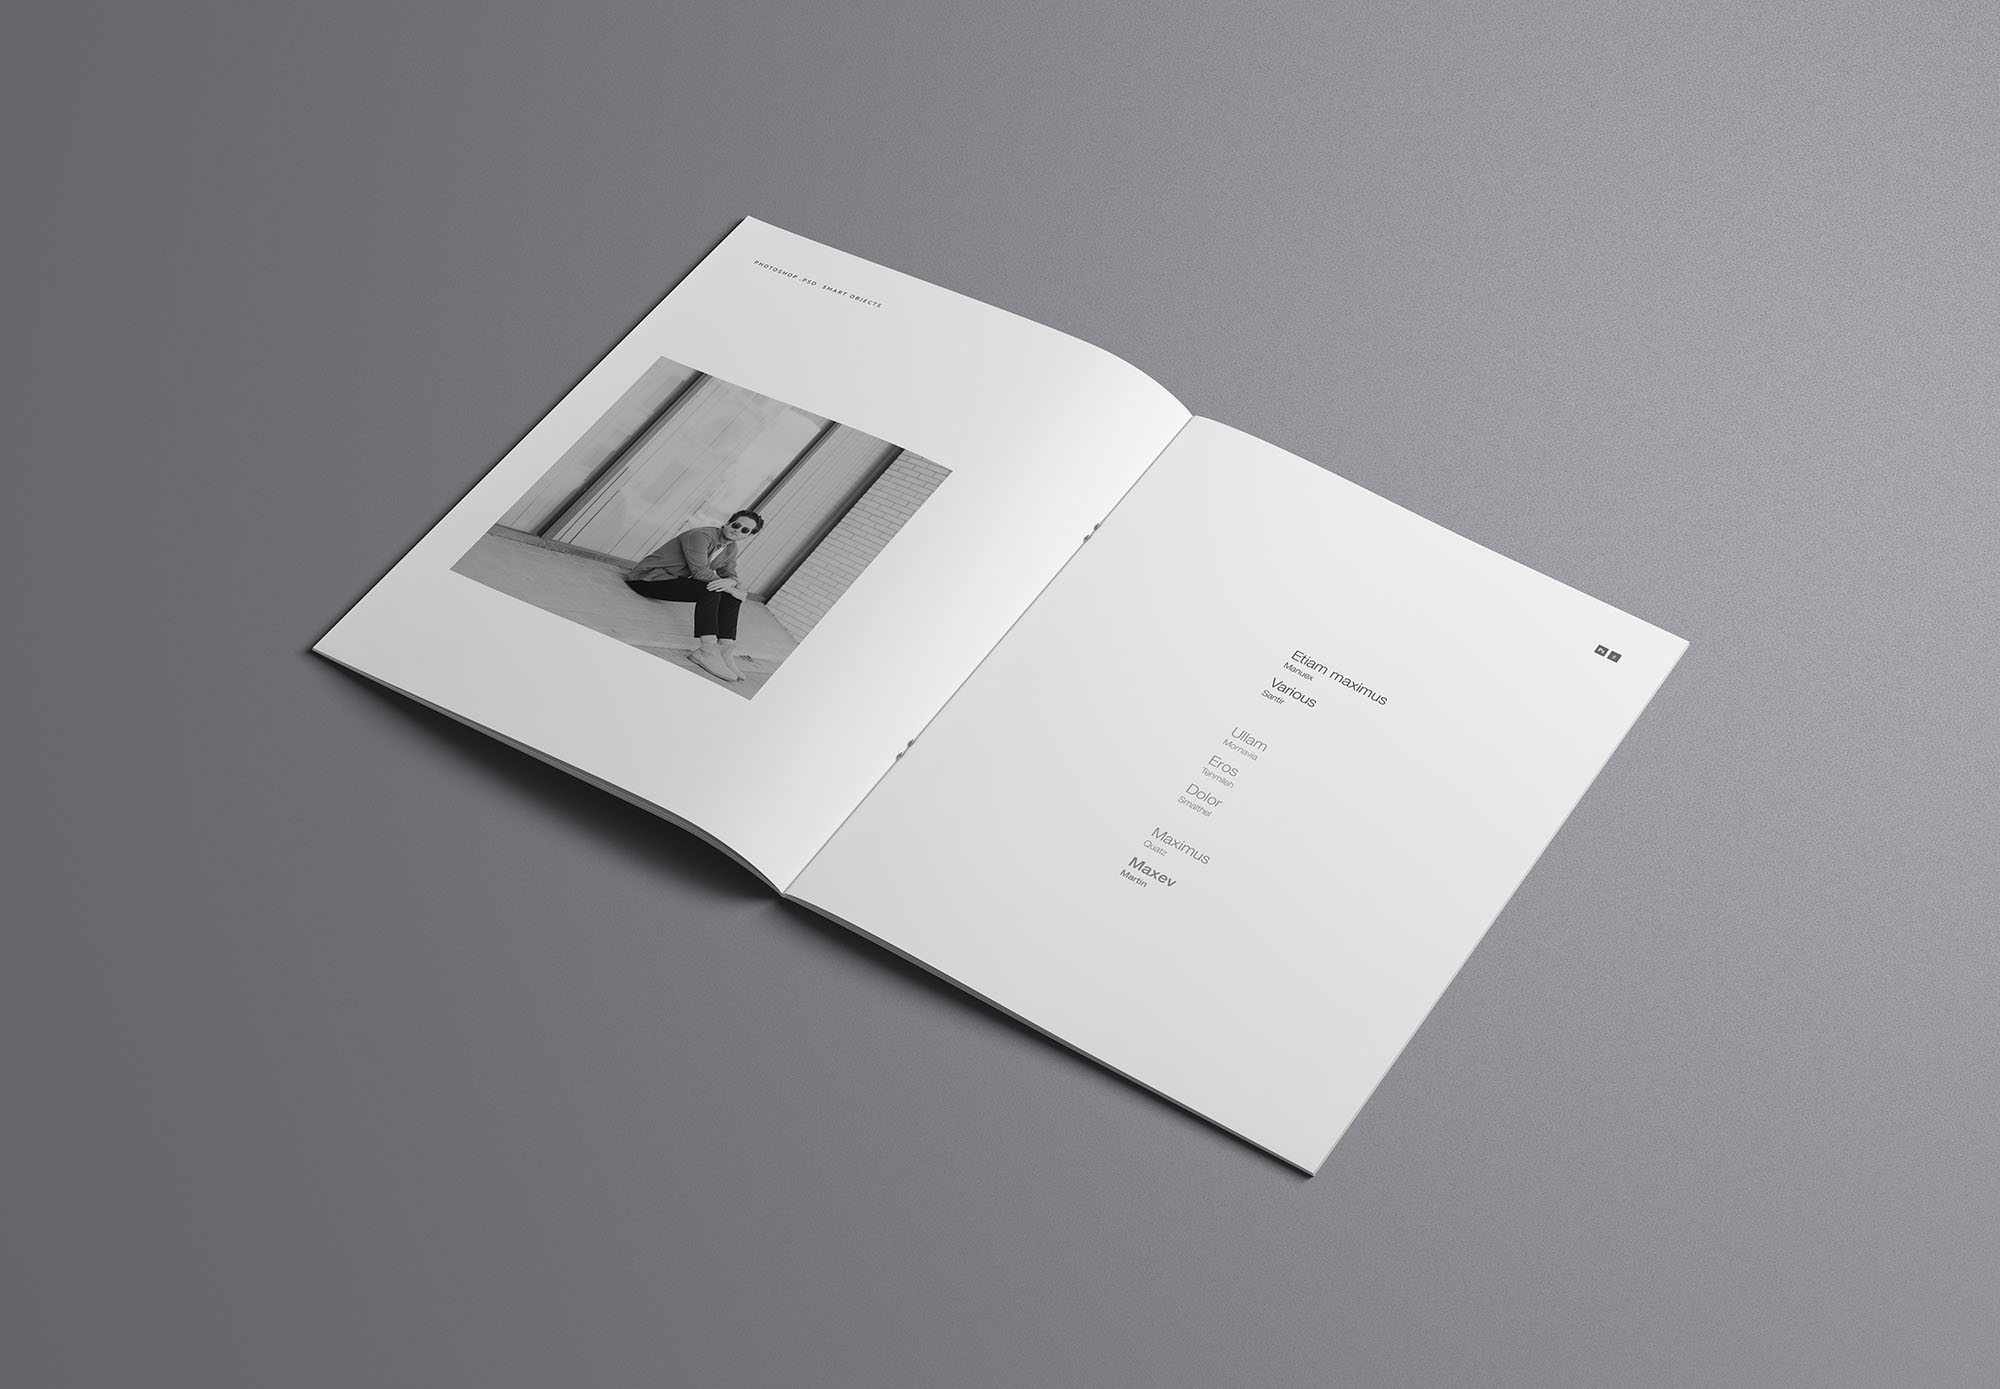 时尚简约优雅的专业画册杂志设计样机展示 Fashion Simple And Elegant Professional Album Magazine Design Prototype Show[2.16G]插图7